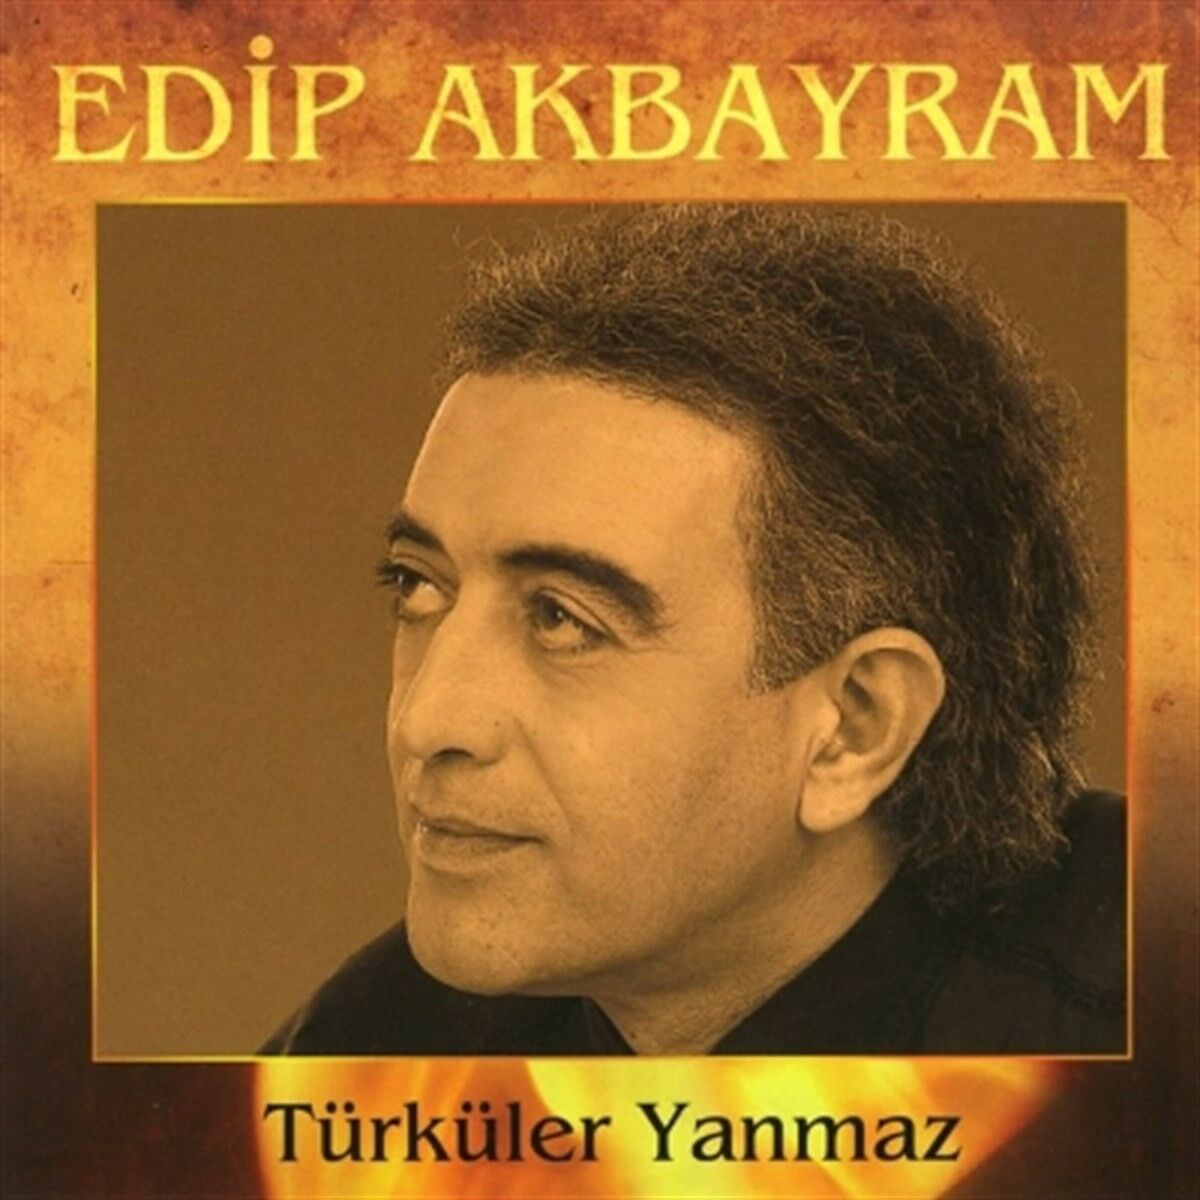 EDİP AKBAYRAM - TÜRKÜLER YANMAZ (1994) - CD YENİ BASIM SIFIR